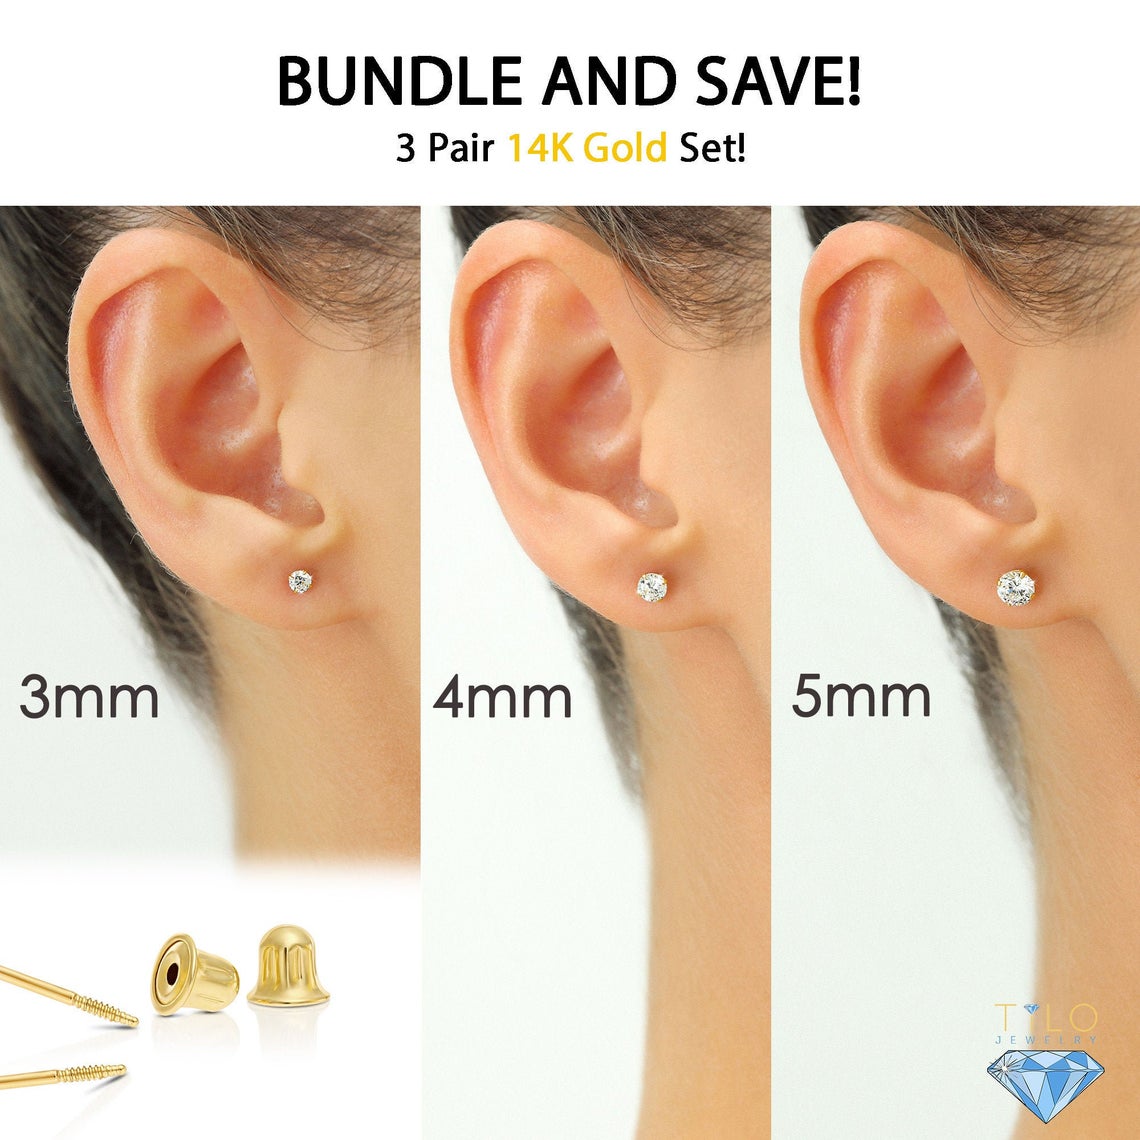 Earring Backs Medium Weight 14k White Gold (Pair)